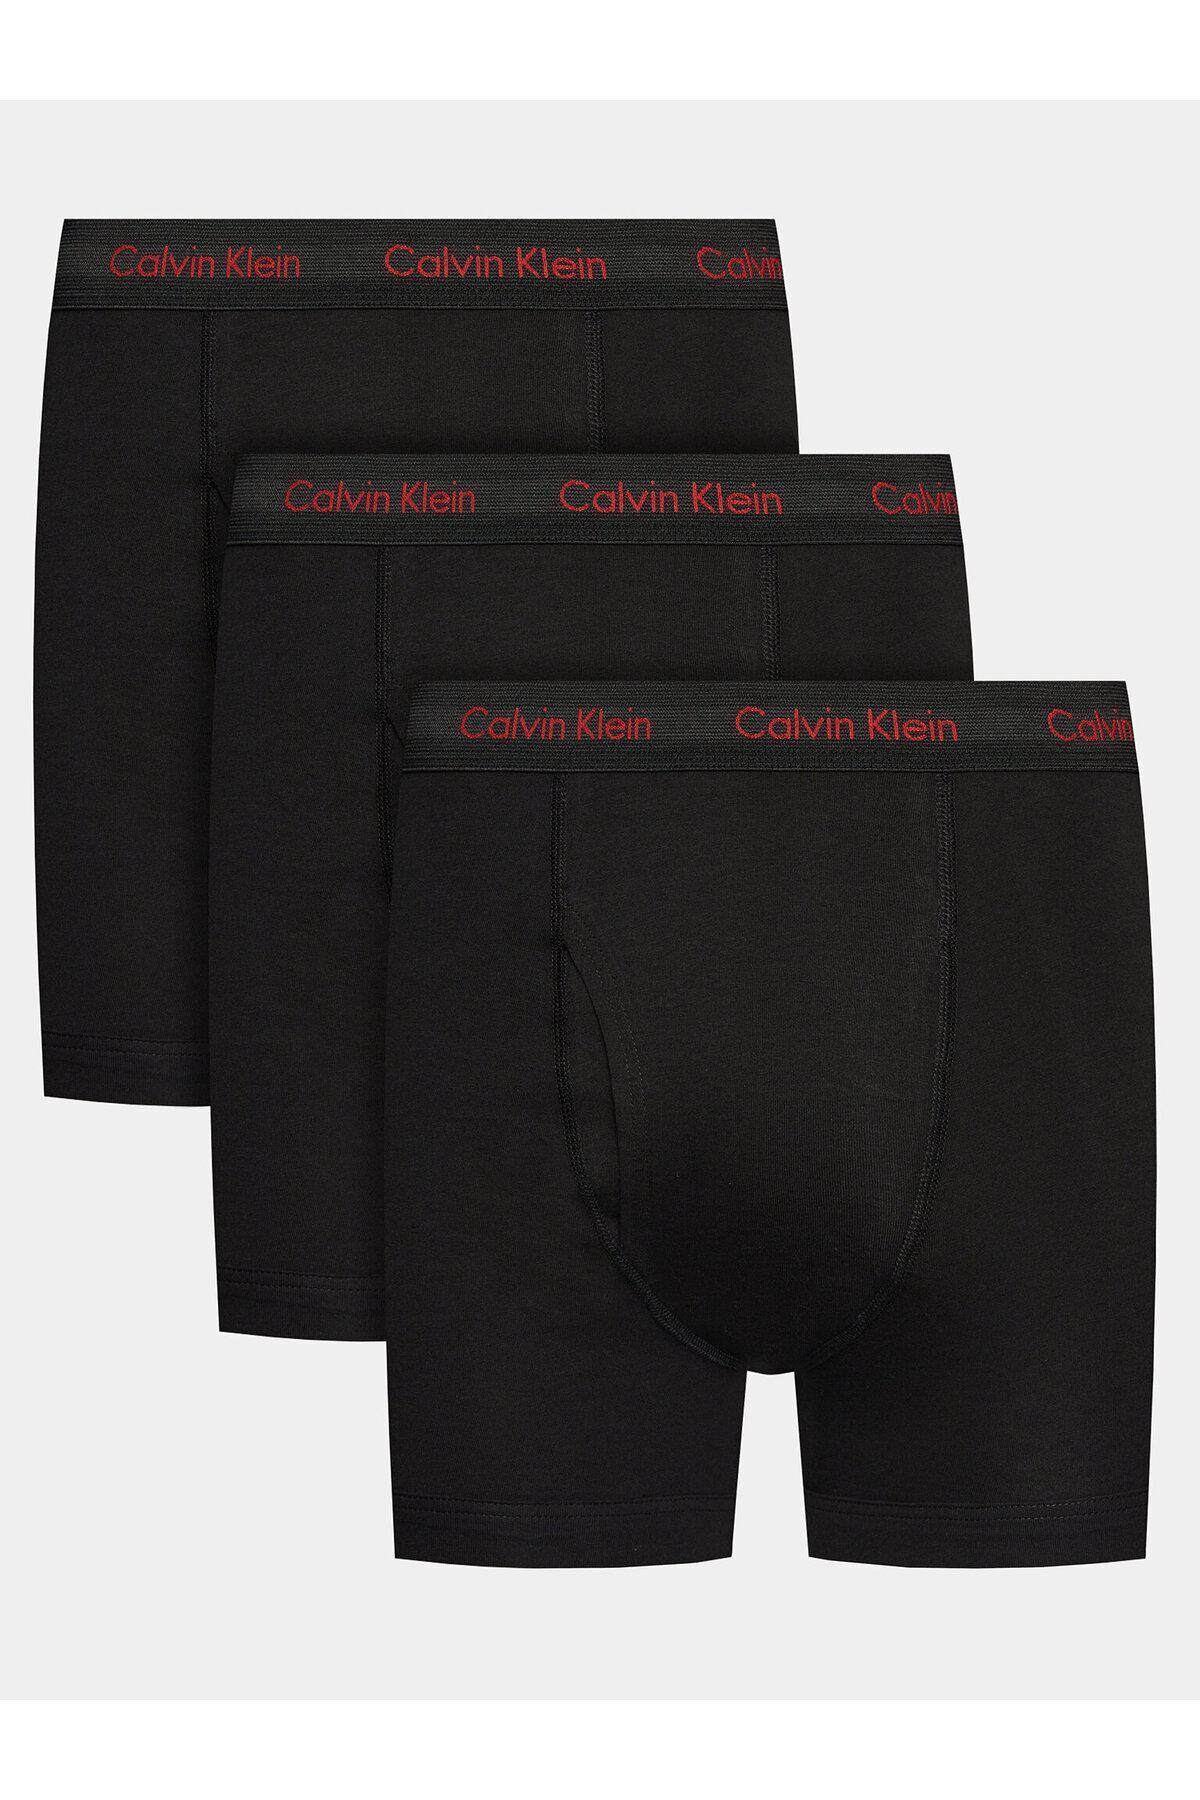 Calvin Klein Erkek Basic Calvin Klein İmzalı Bel Bantlı Siyah Boxer 000NB2616A-NC1